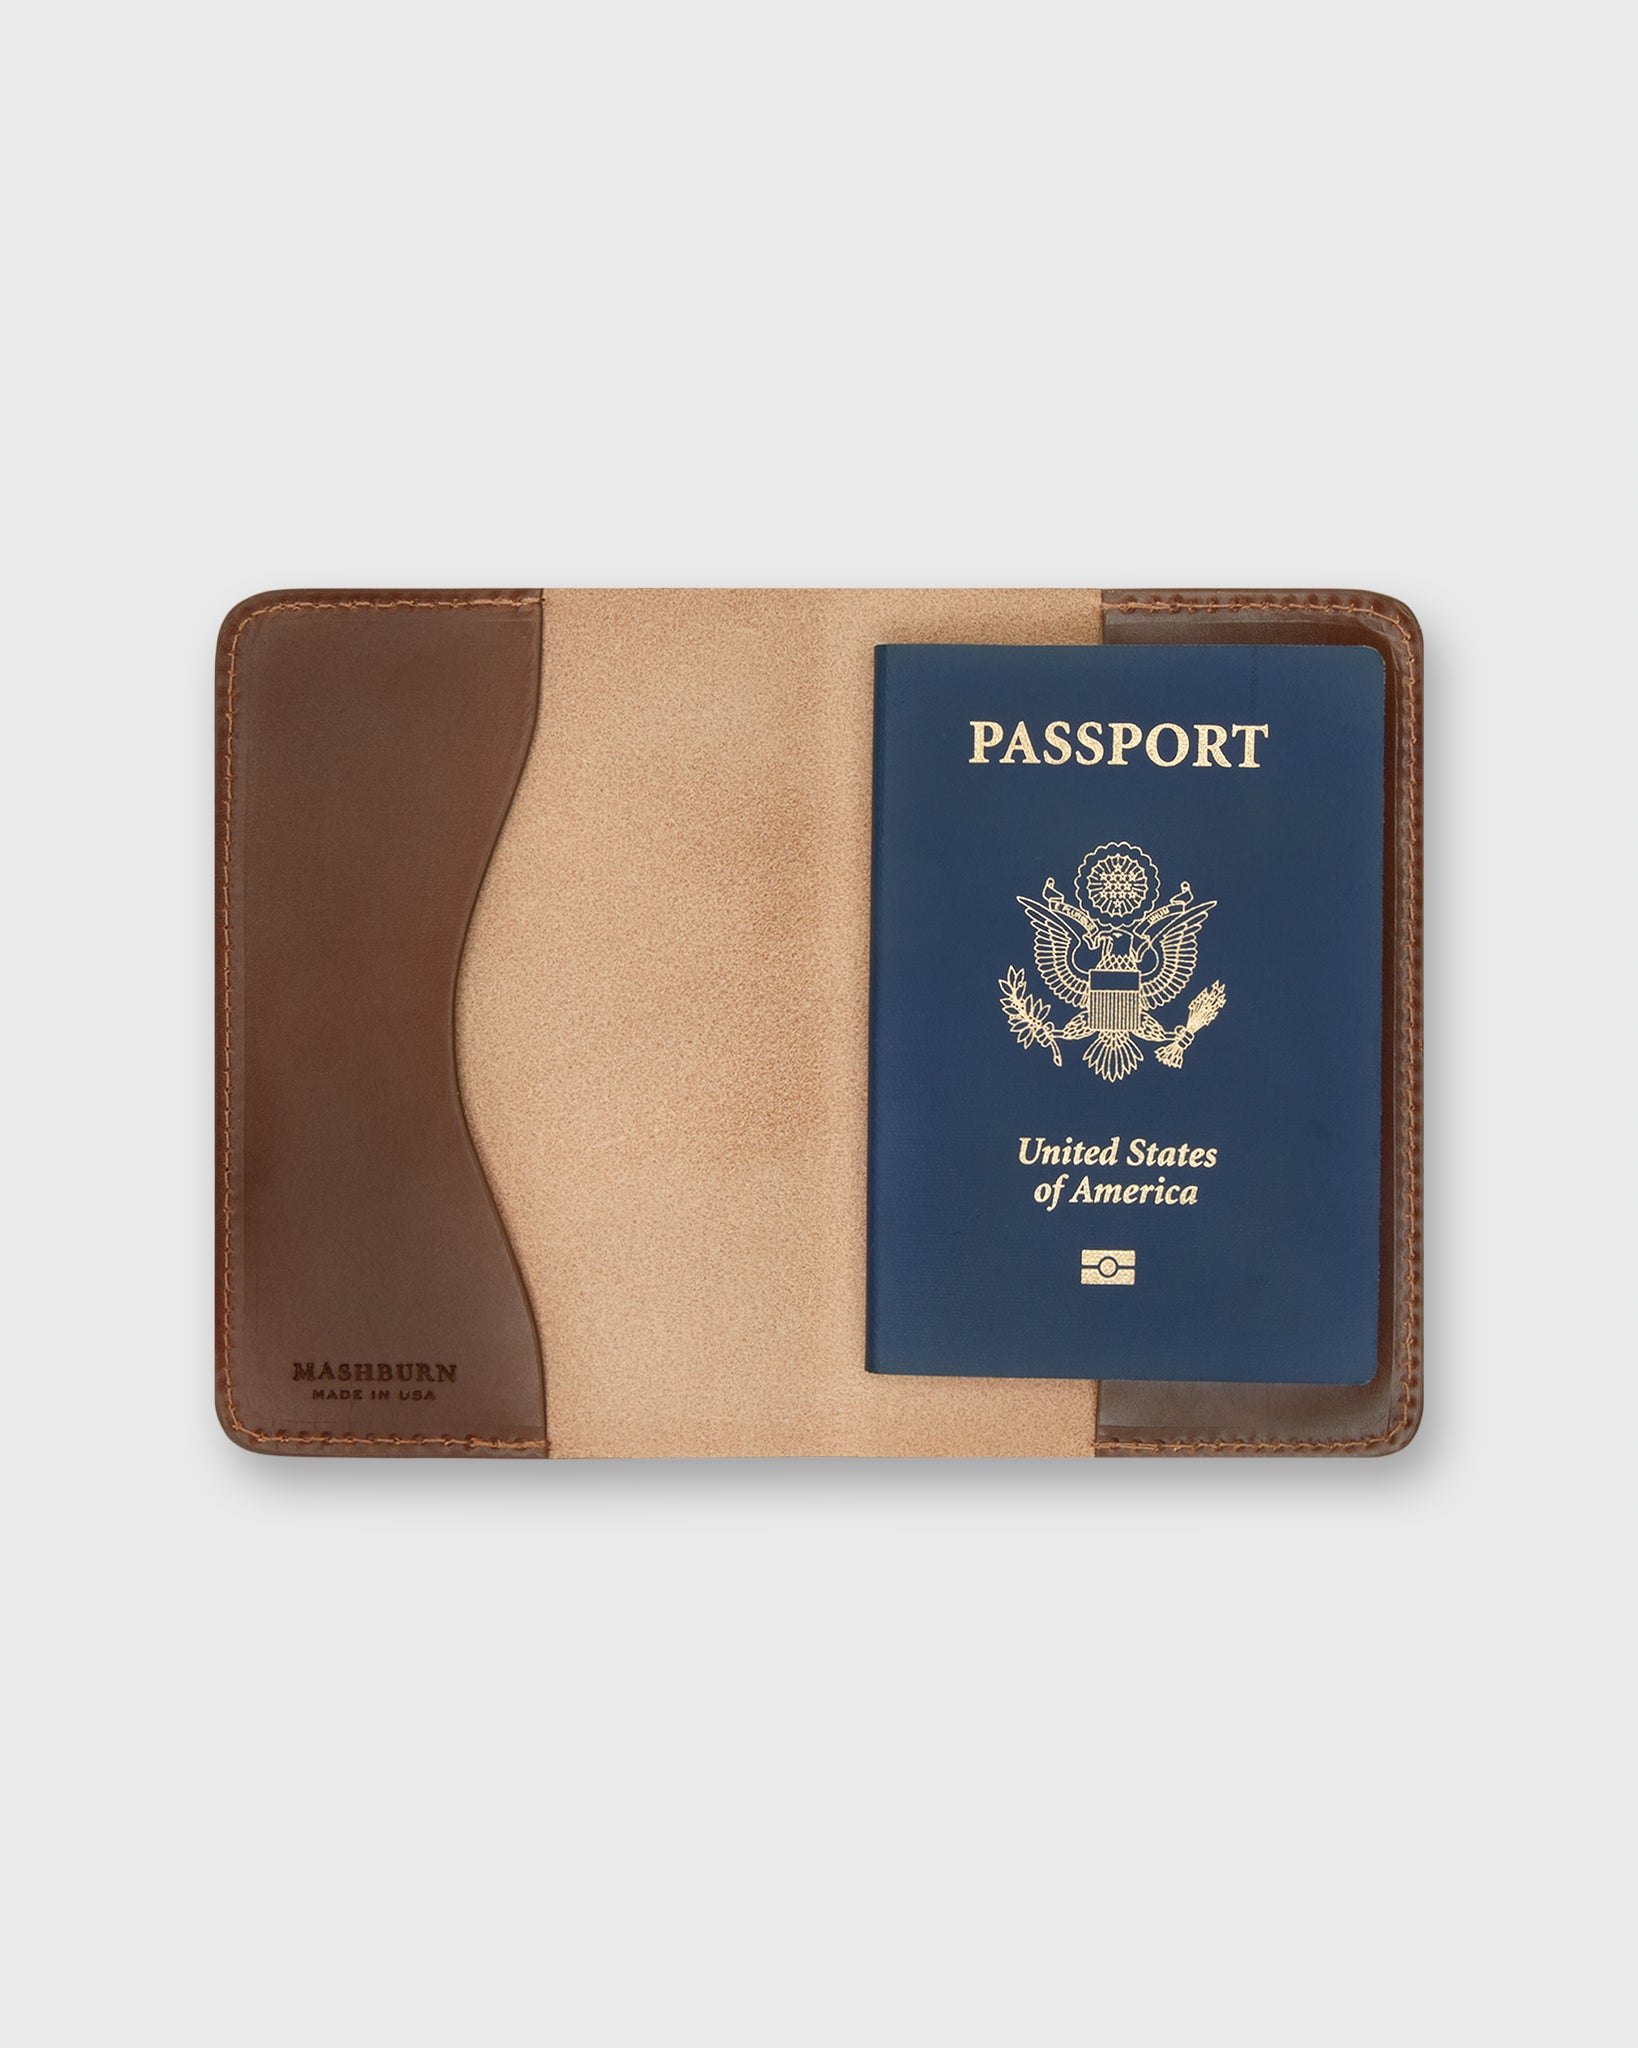 Passport Holder in Medium Brown Leather